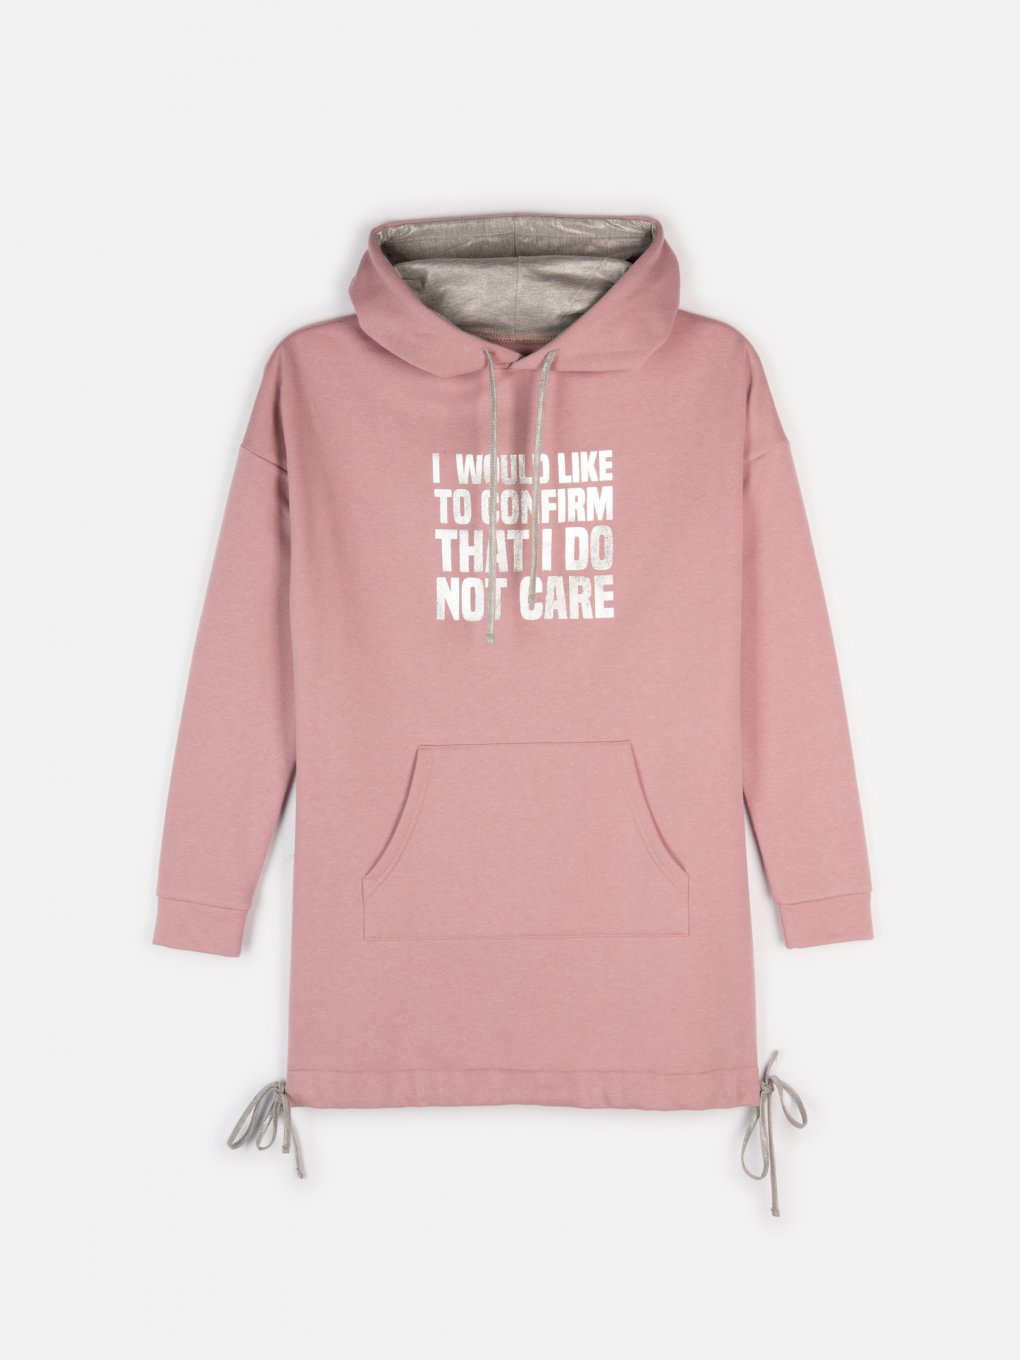 Longline metallic slogan print hoodie